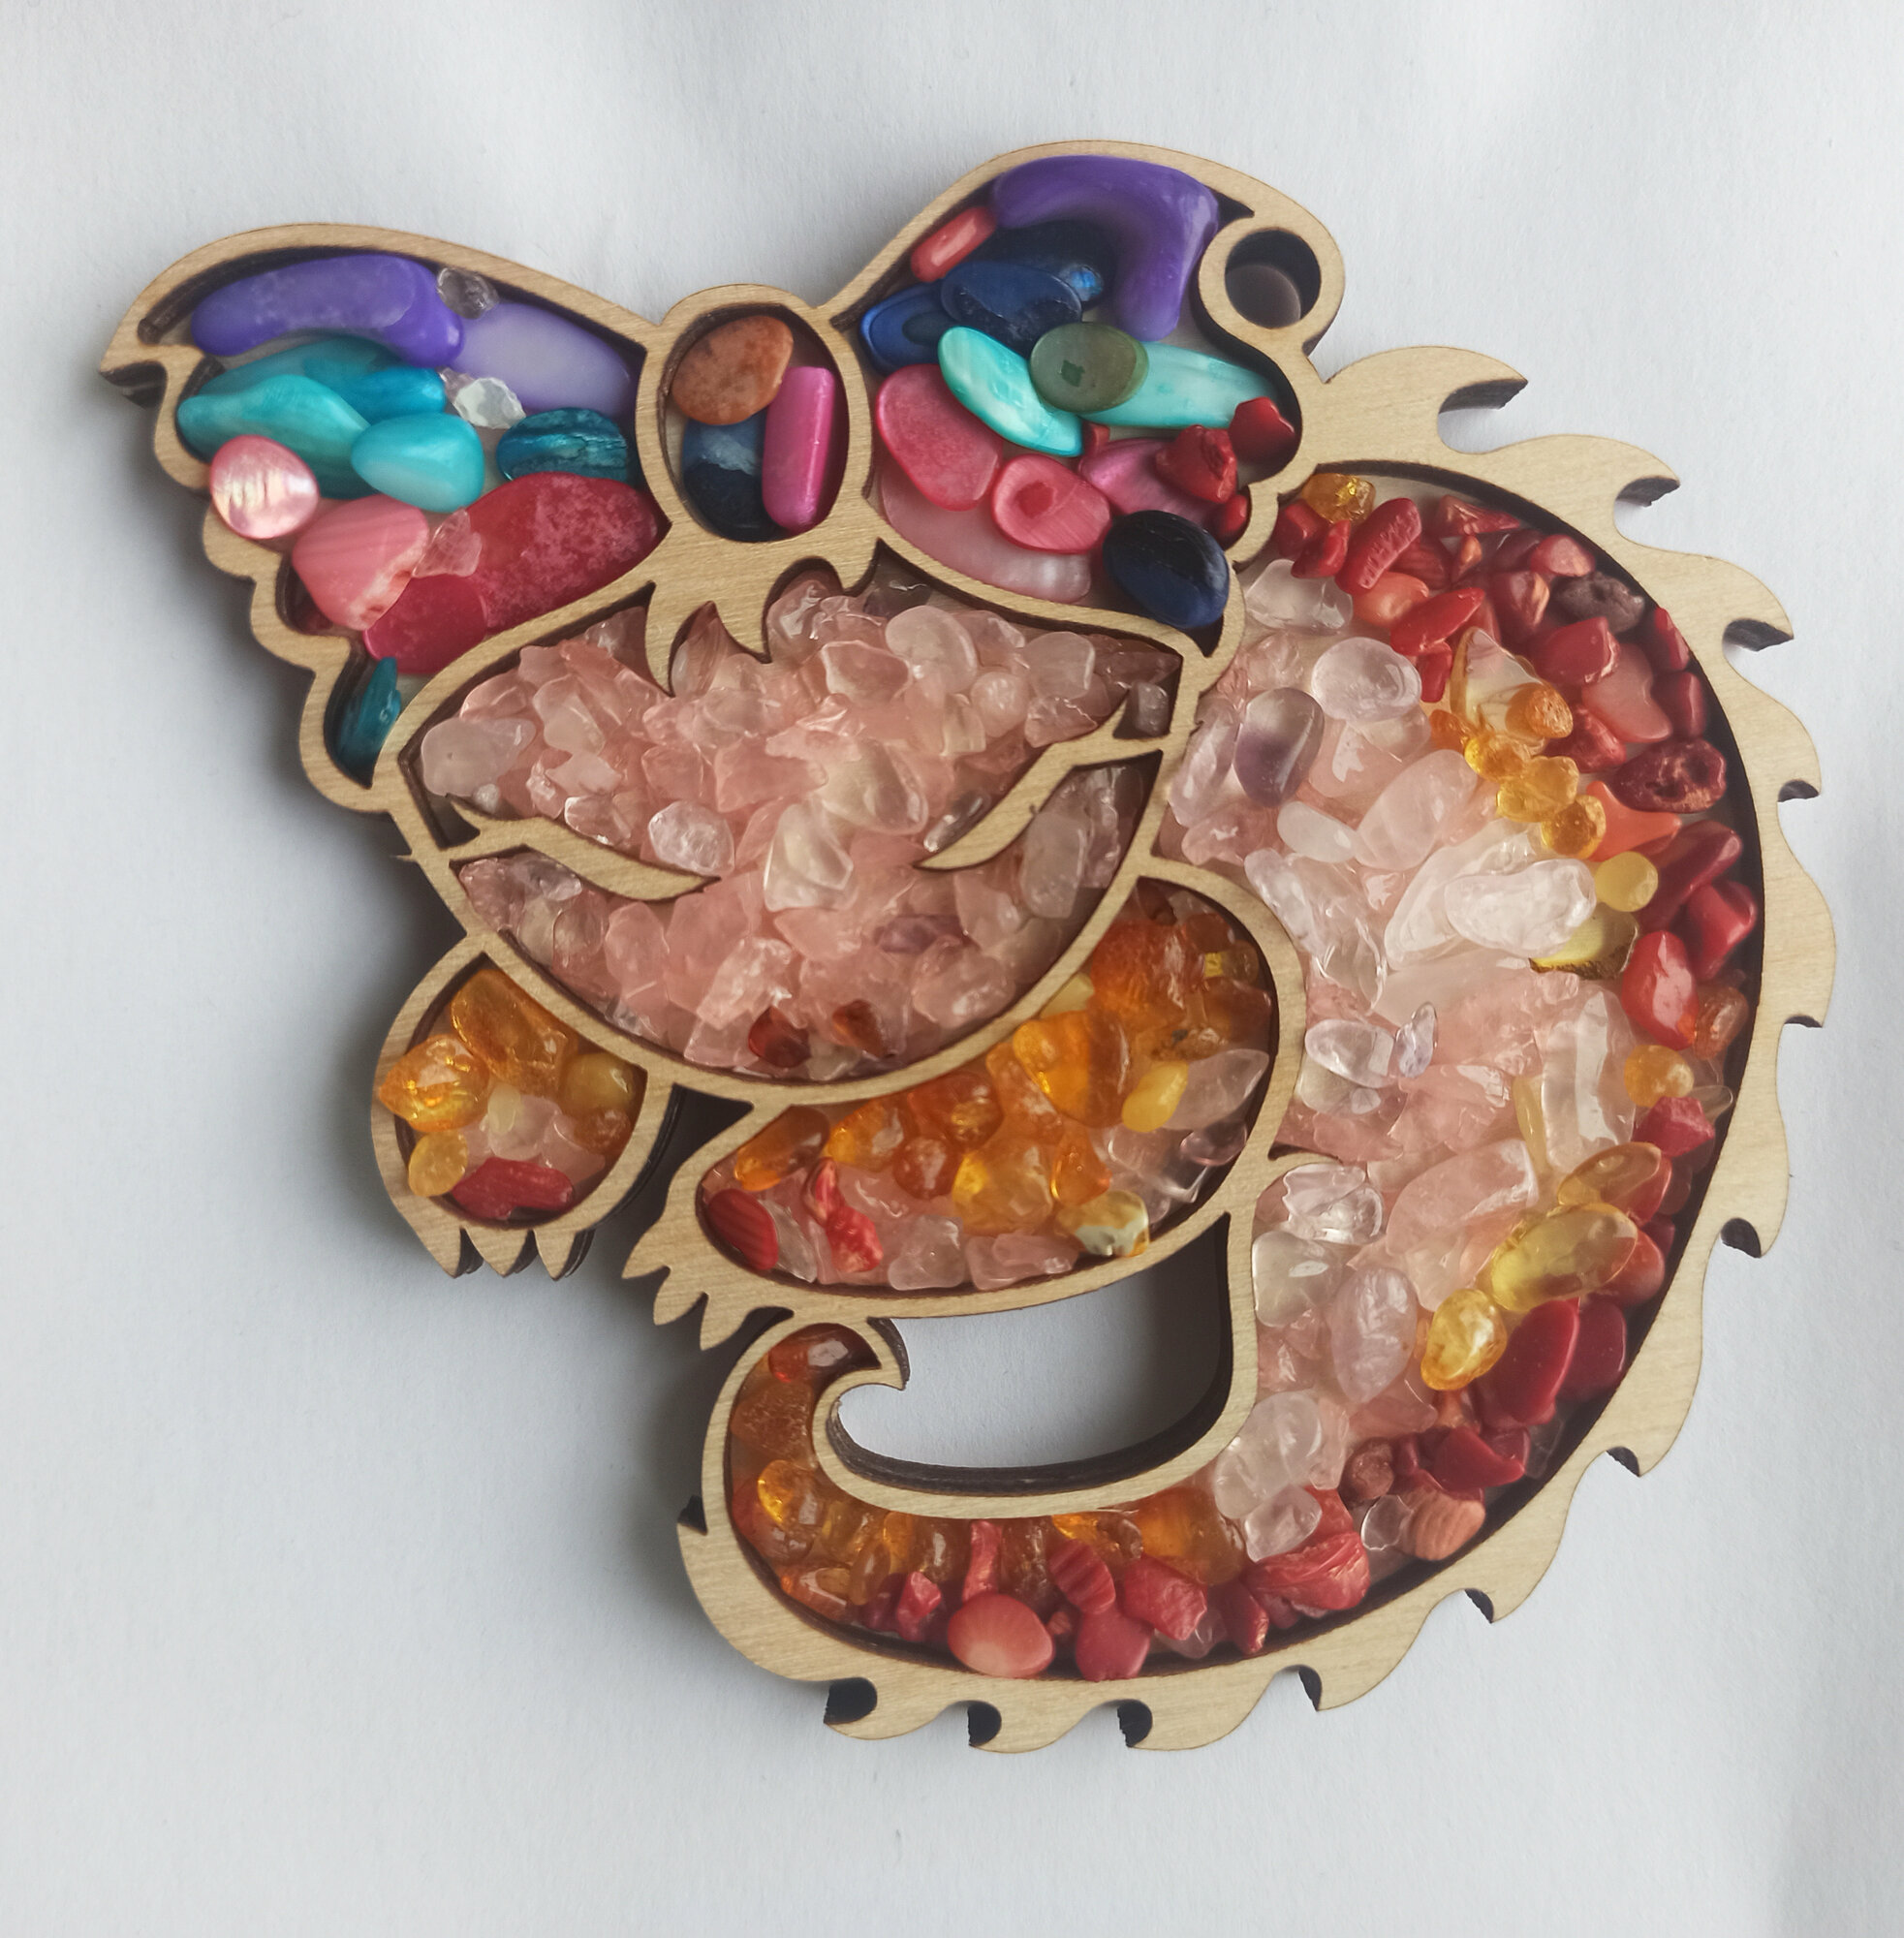 Набор для творчества, мозаика "Соня" 9х10 см. серия "Волшебные Драконы"; балтийский янтарь, коралл, розовый кварц, перламутр